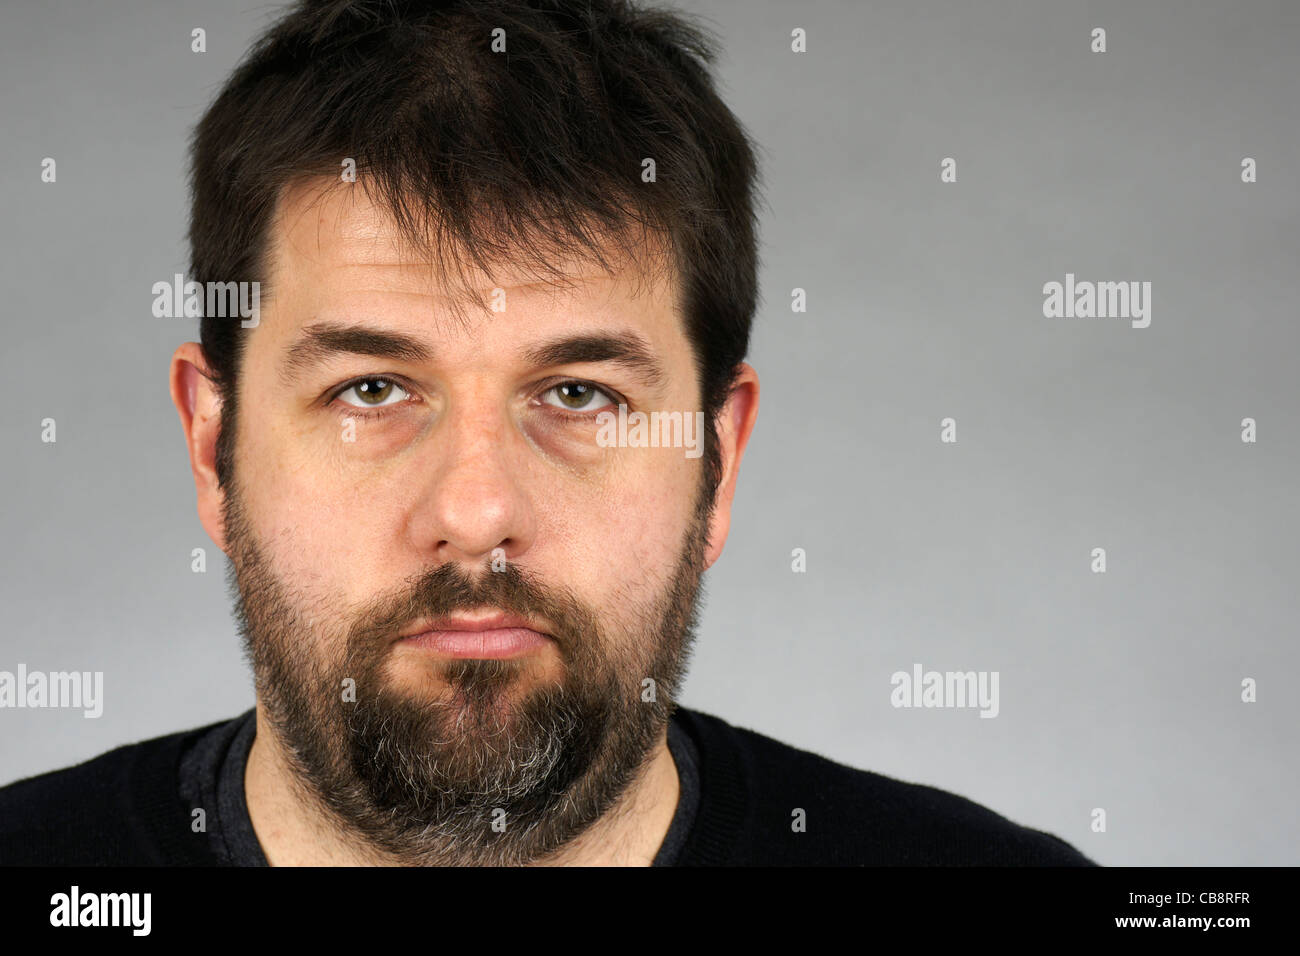 Porträt eines sehr ernsten, düsteren oder deprimiert dunkle Haare und Bart Mittleralter auf grauem Hintergrund. Stockfoto